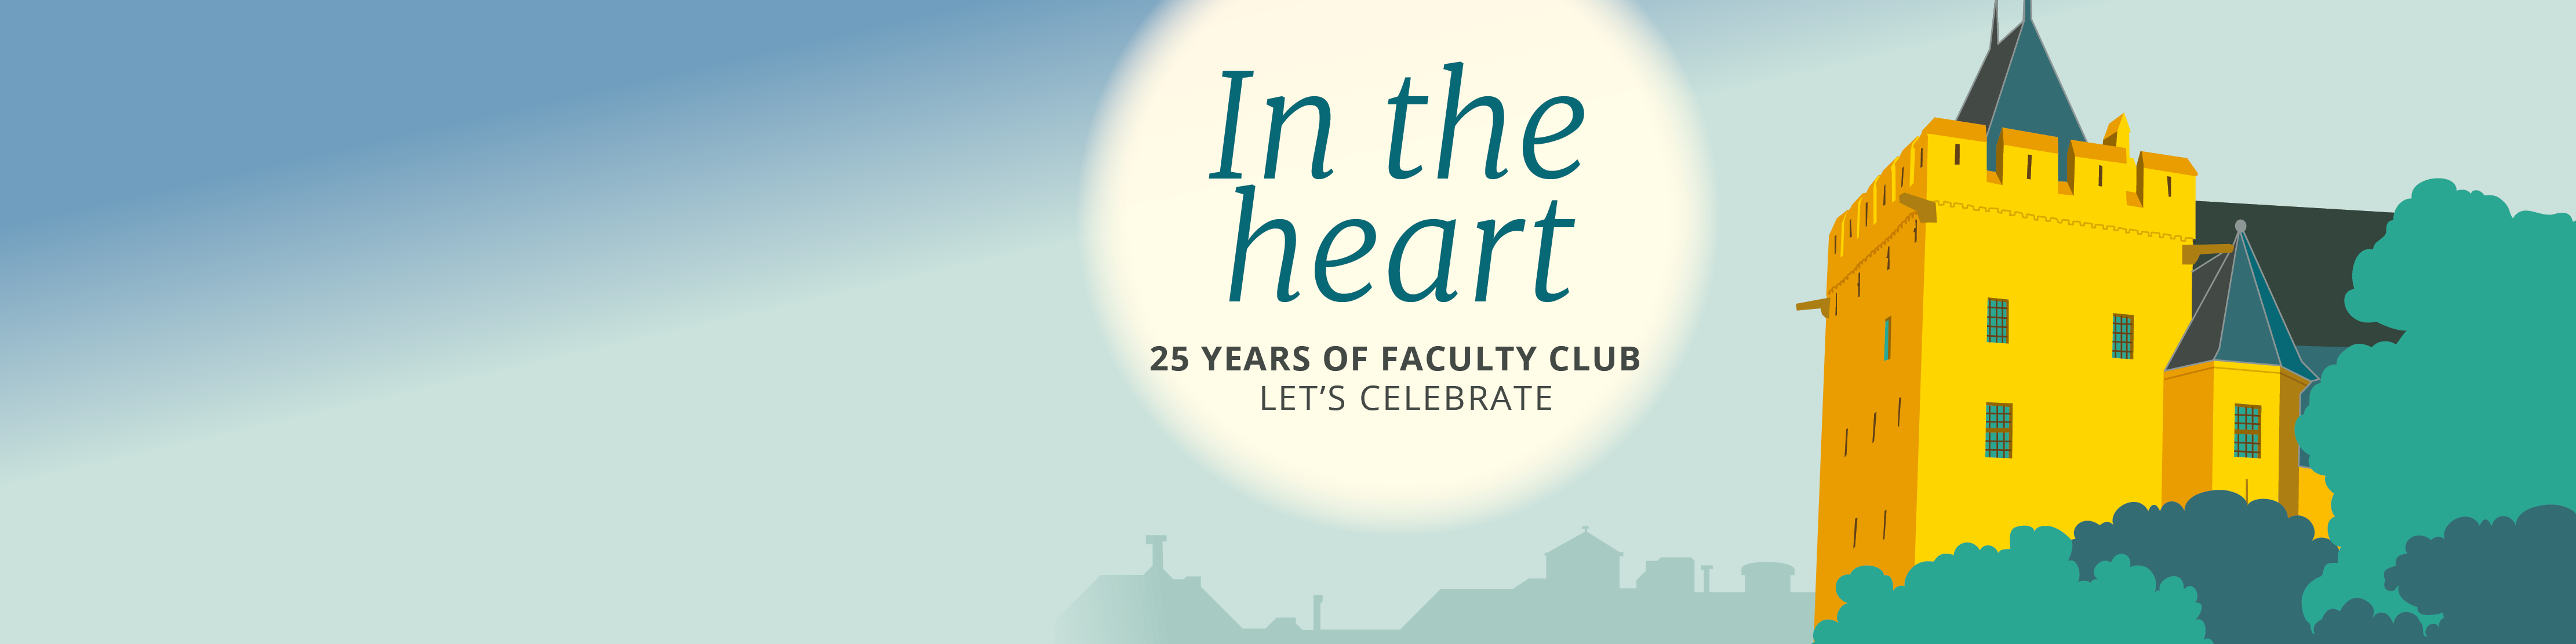 Lustrumbeeld 25 jaar Faculty Club